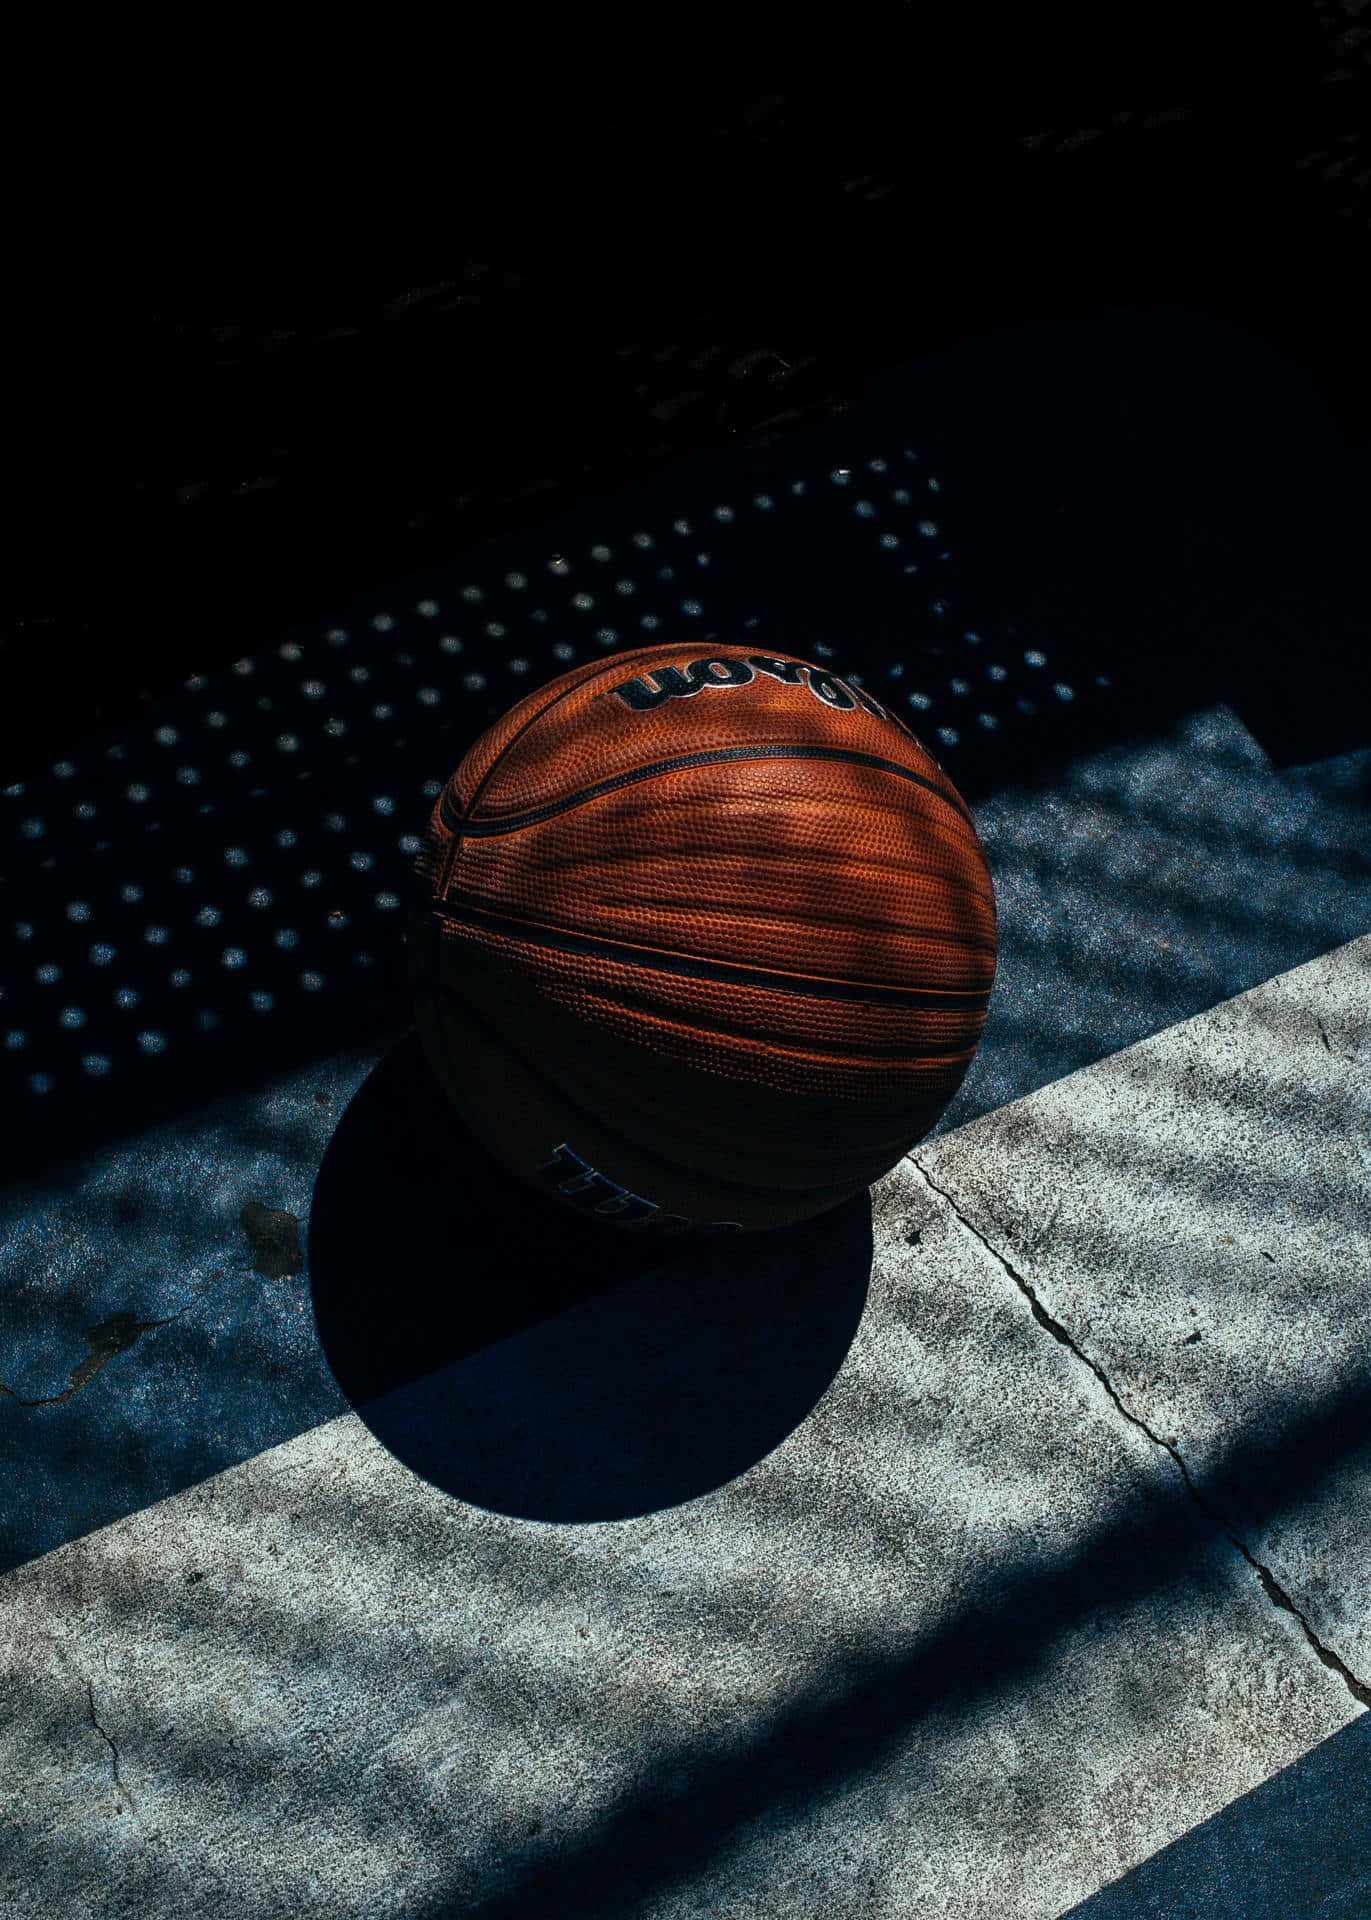 Basketballin Shadowand Light.jpg Wallpaper